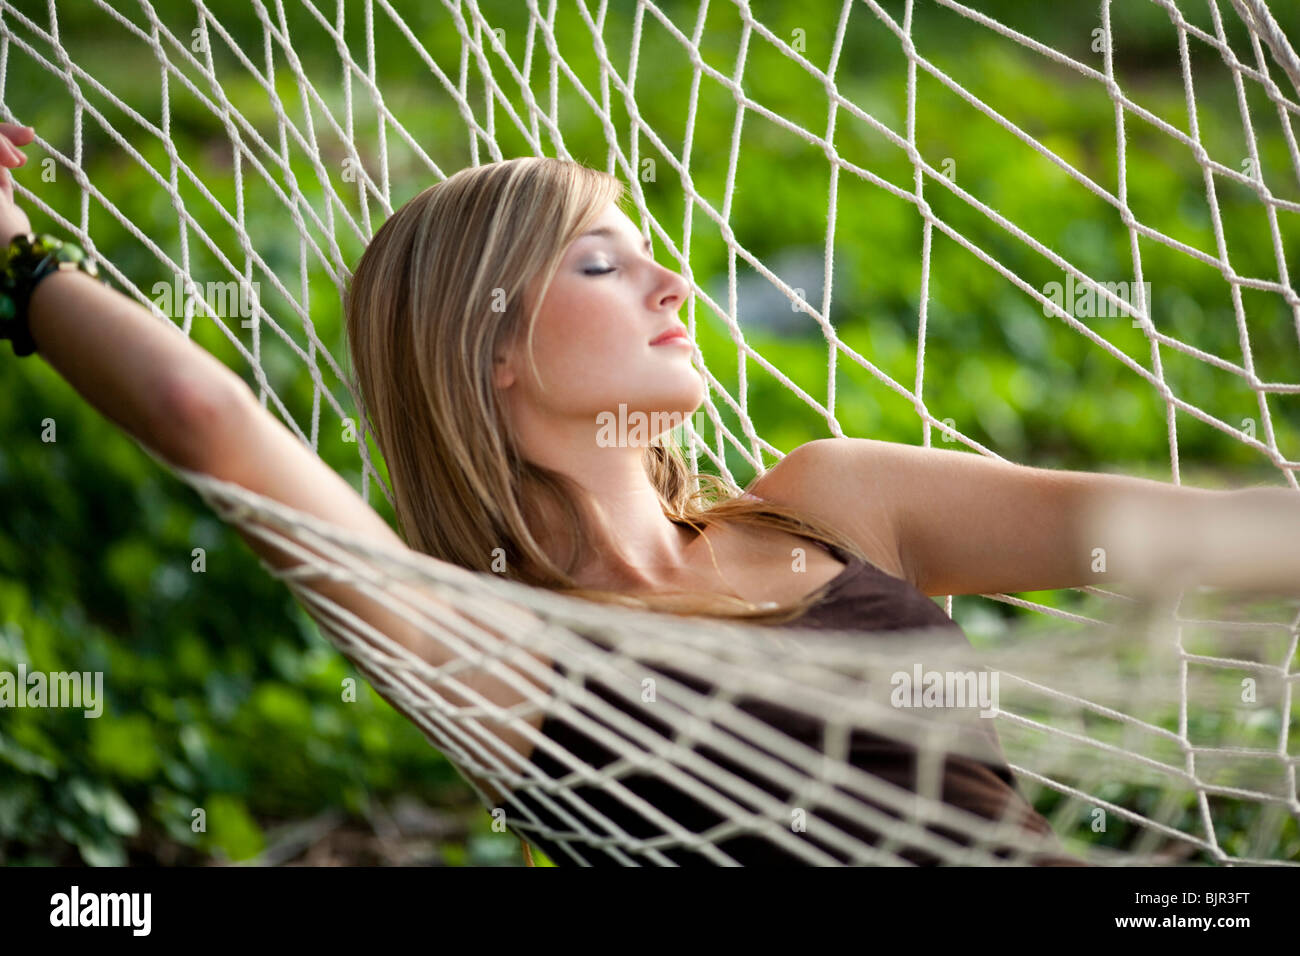 Teenage girl in a hammock sleeping Stock Photo